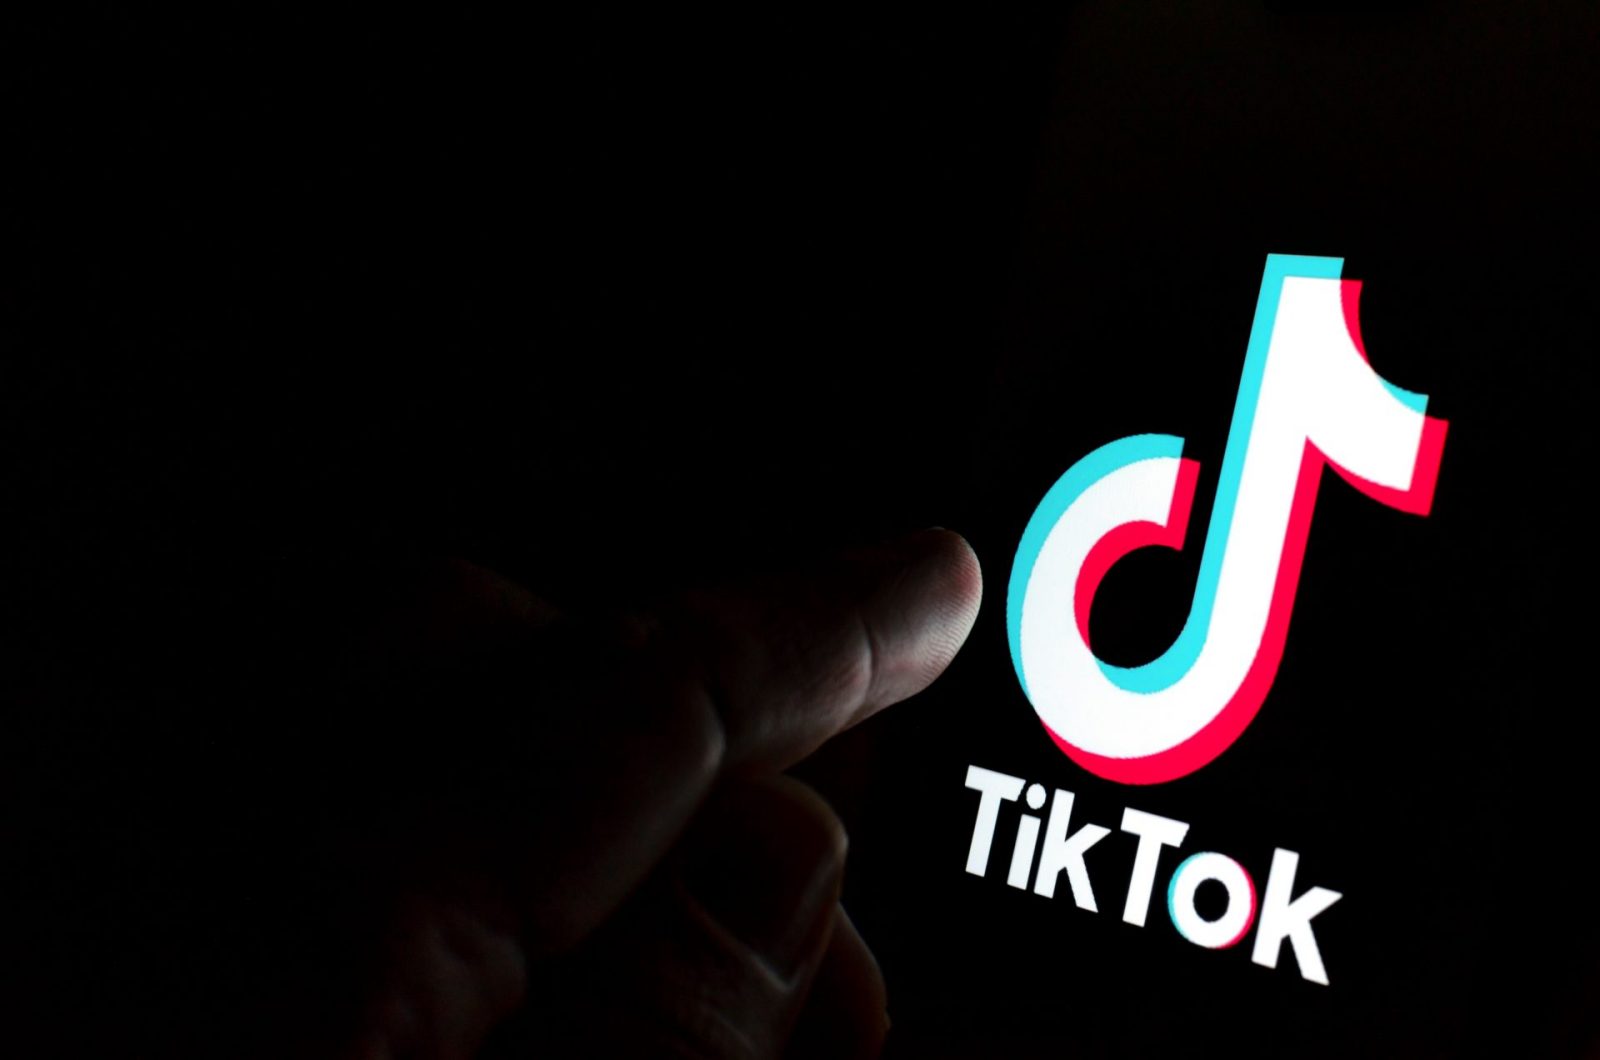 finger pointing to TikTok logo